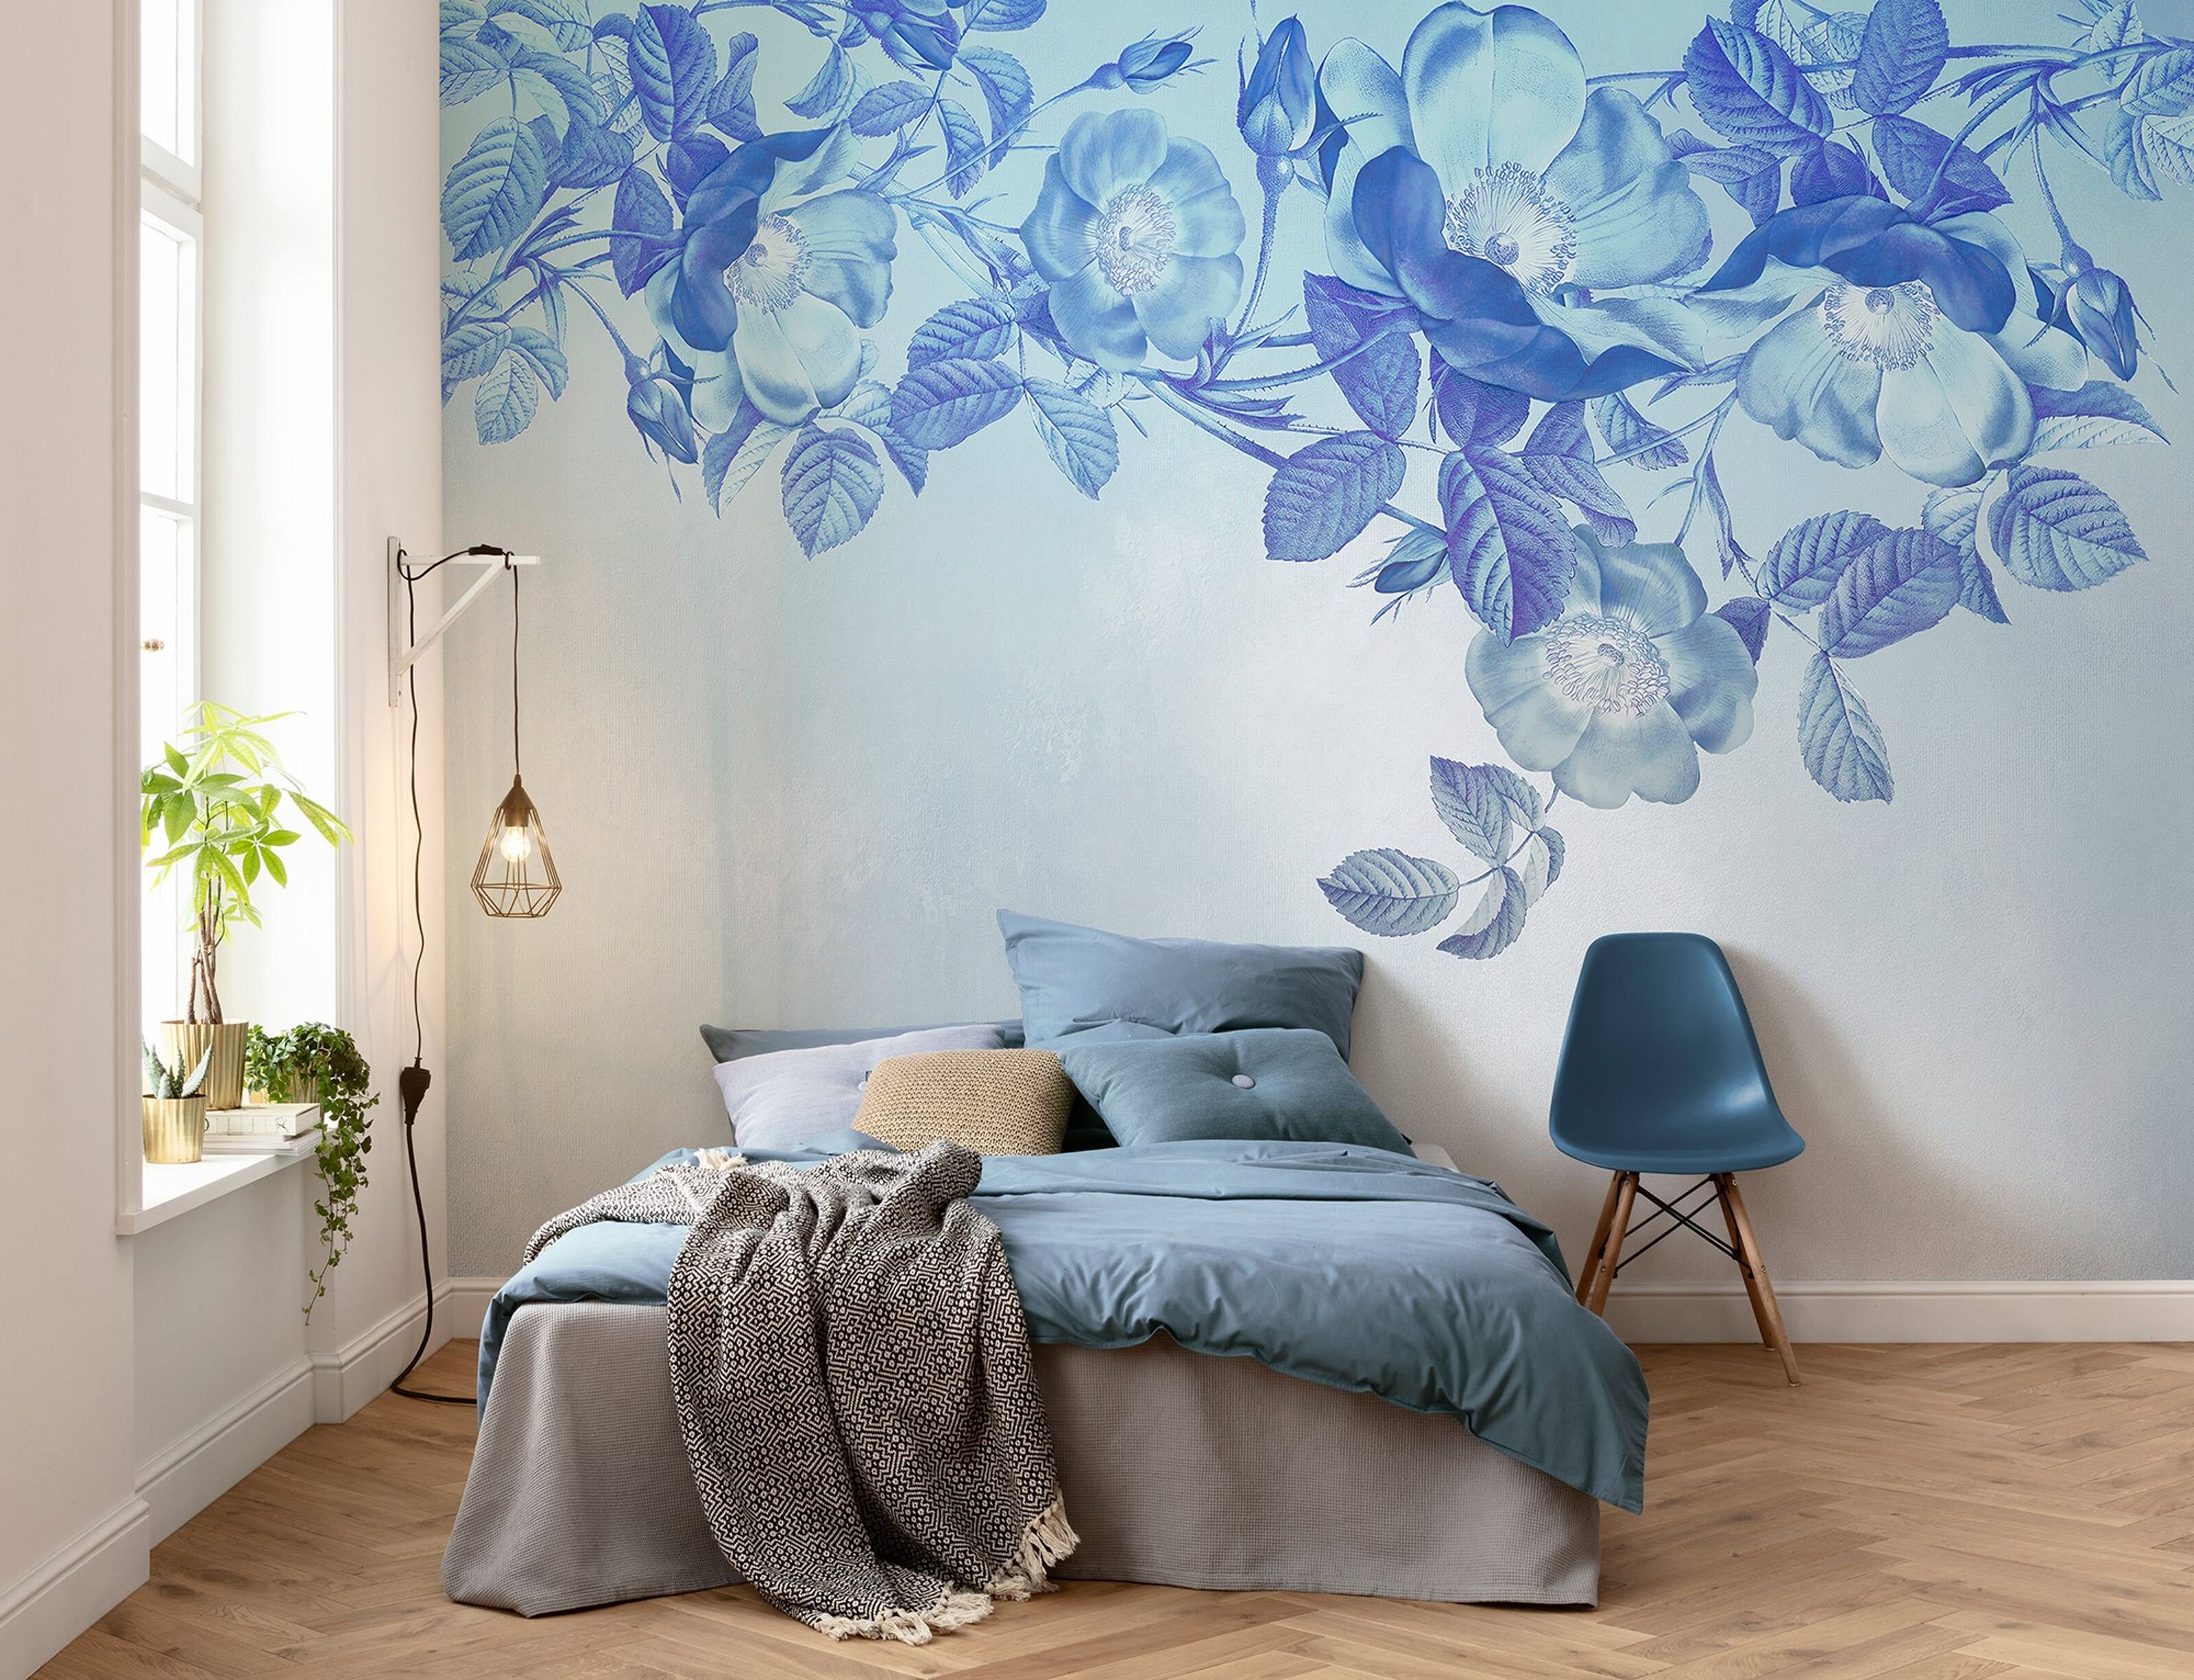 Aura - - cm x wholesale wallpaper size 250 Blue Buy Non-woven 350 photo